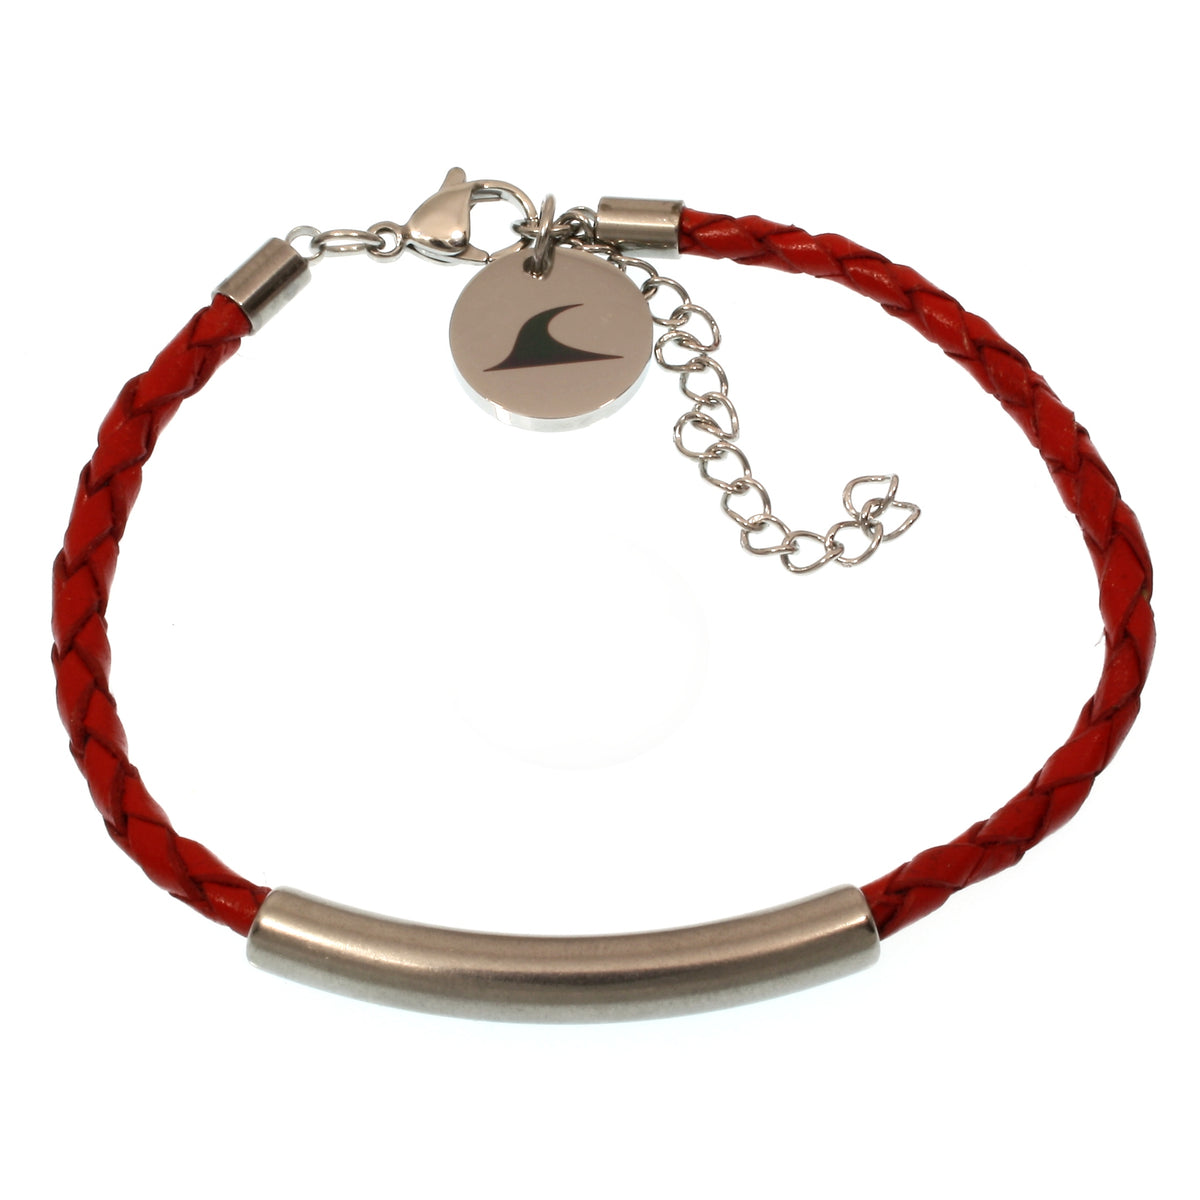 Damen-Leder-armband-curve-fusskette-rot-geflochten-Edelstahlverschluss-verstellbar-vorn-wavepirate-shop-f